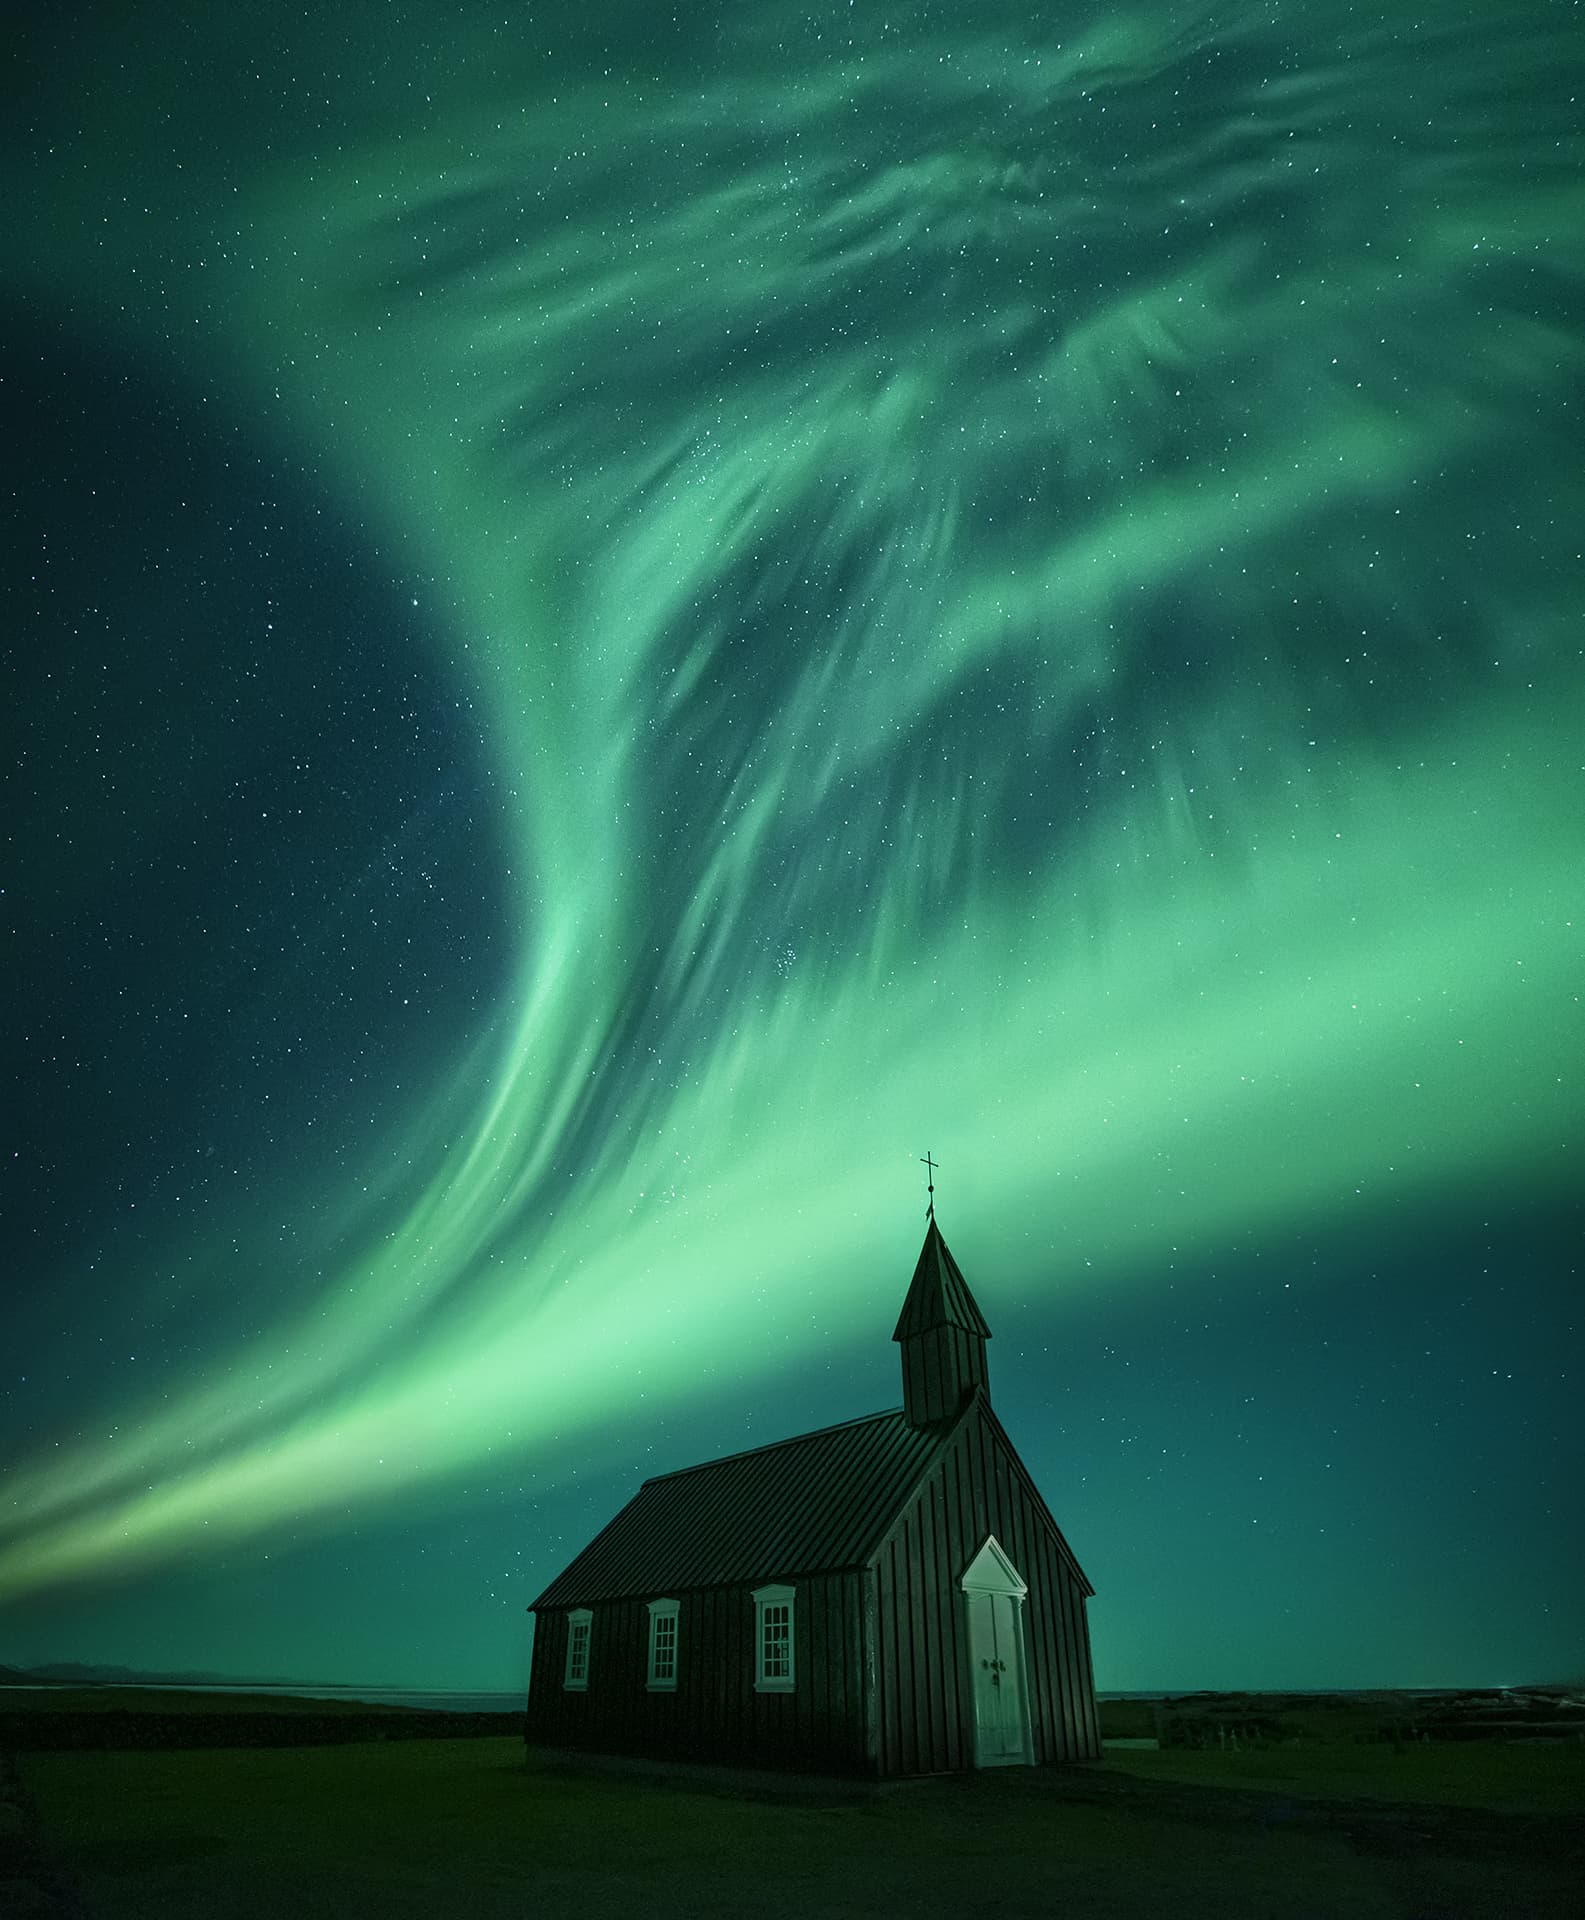 Mejor imagen de la aurora boreal